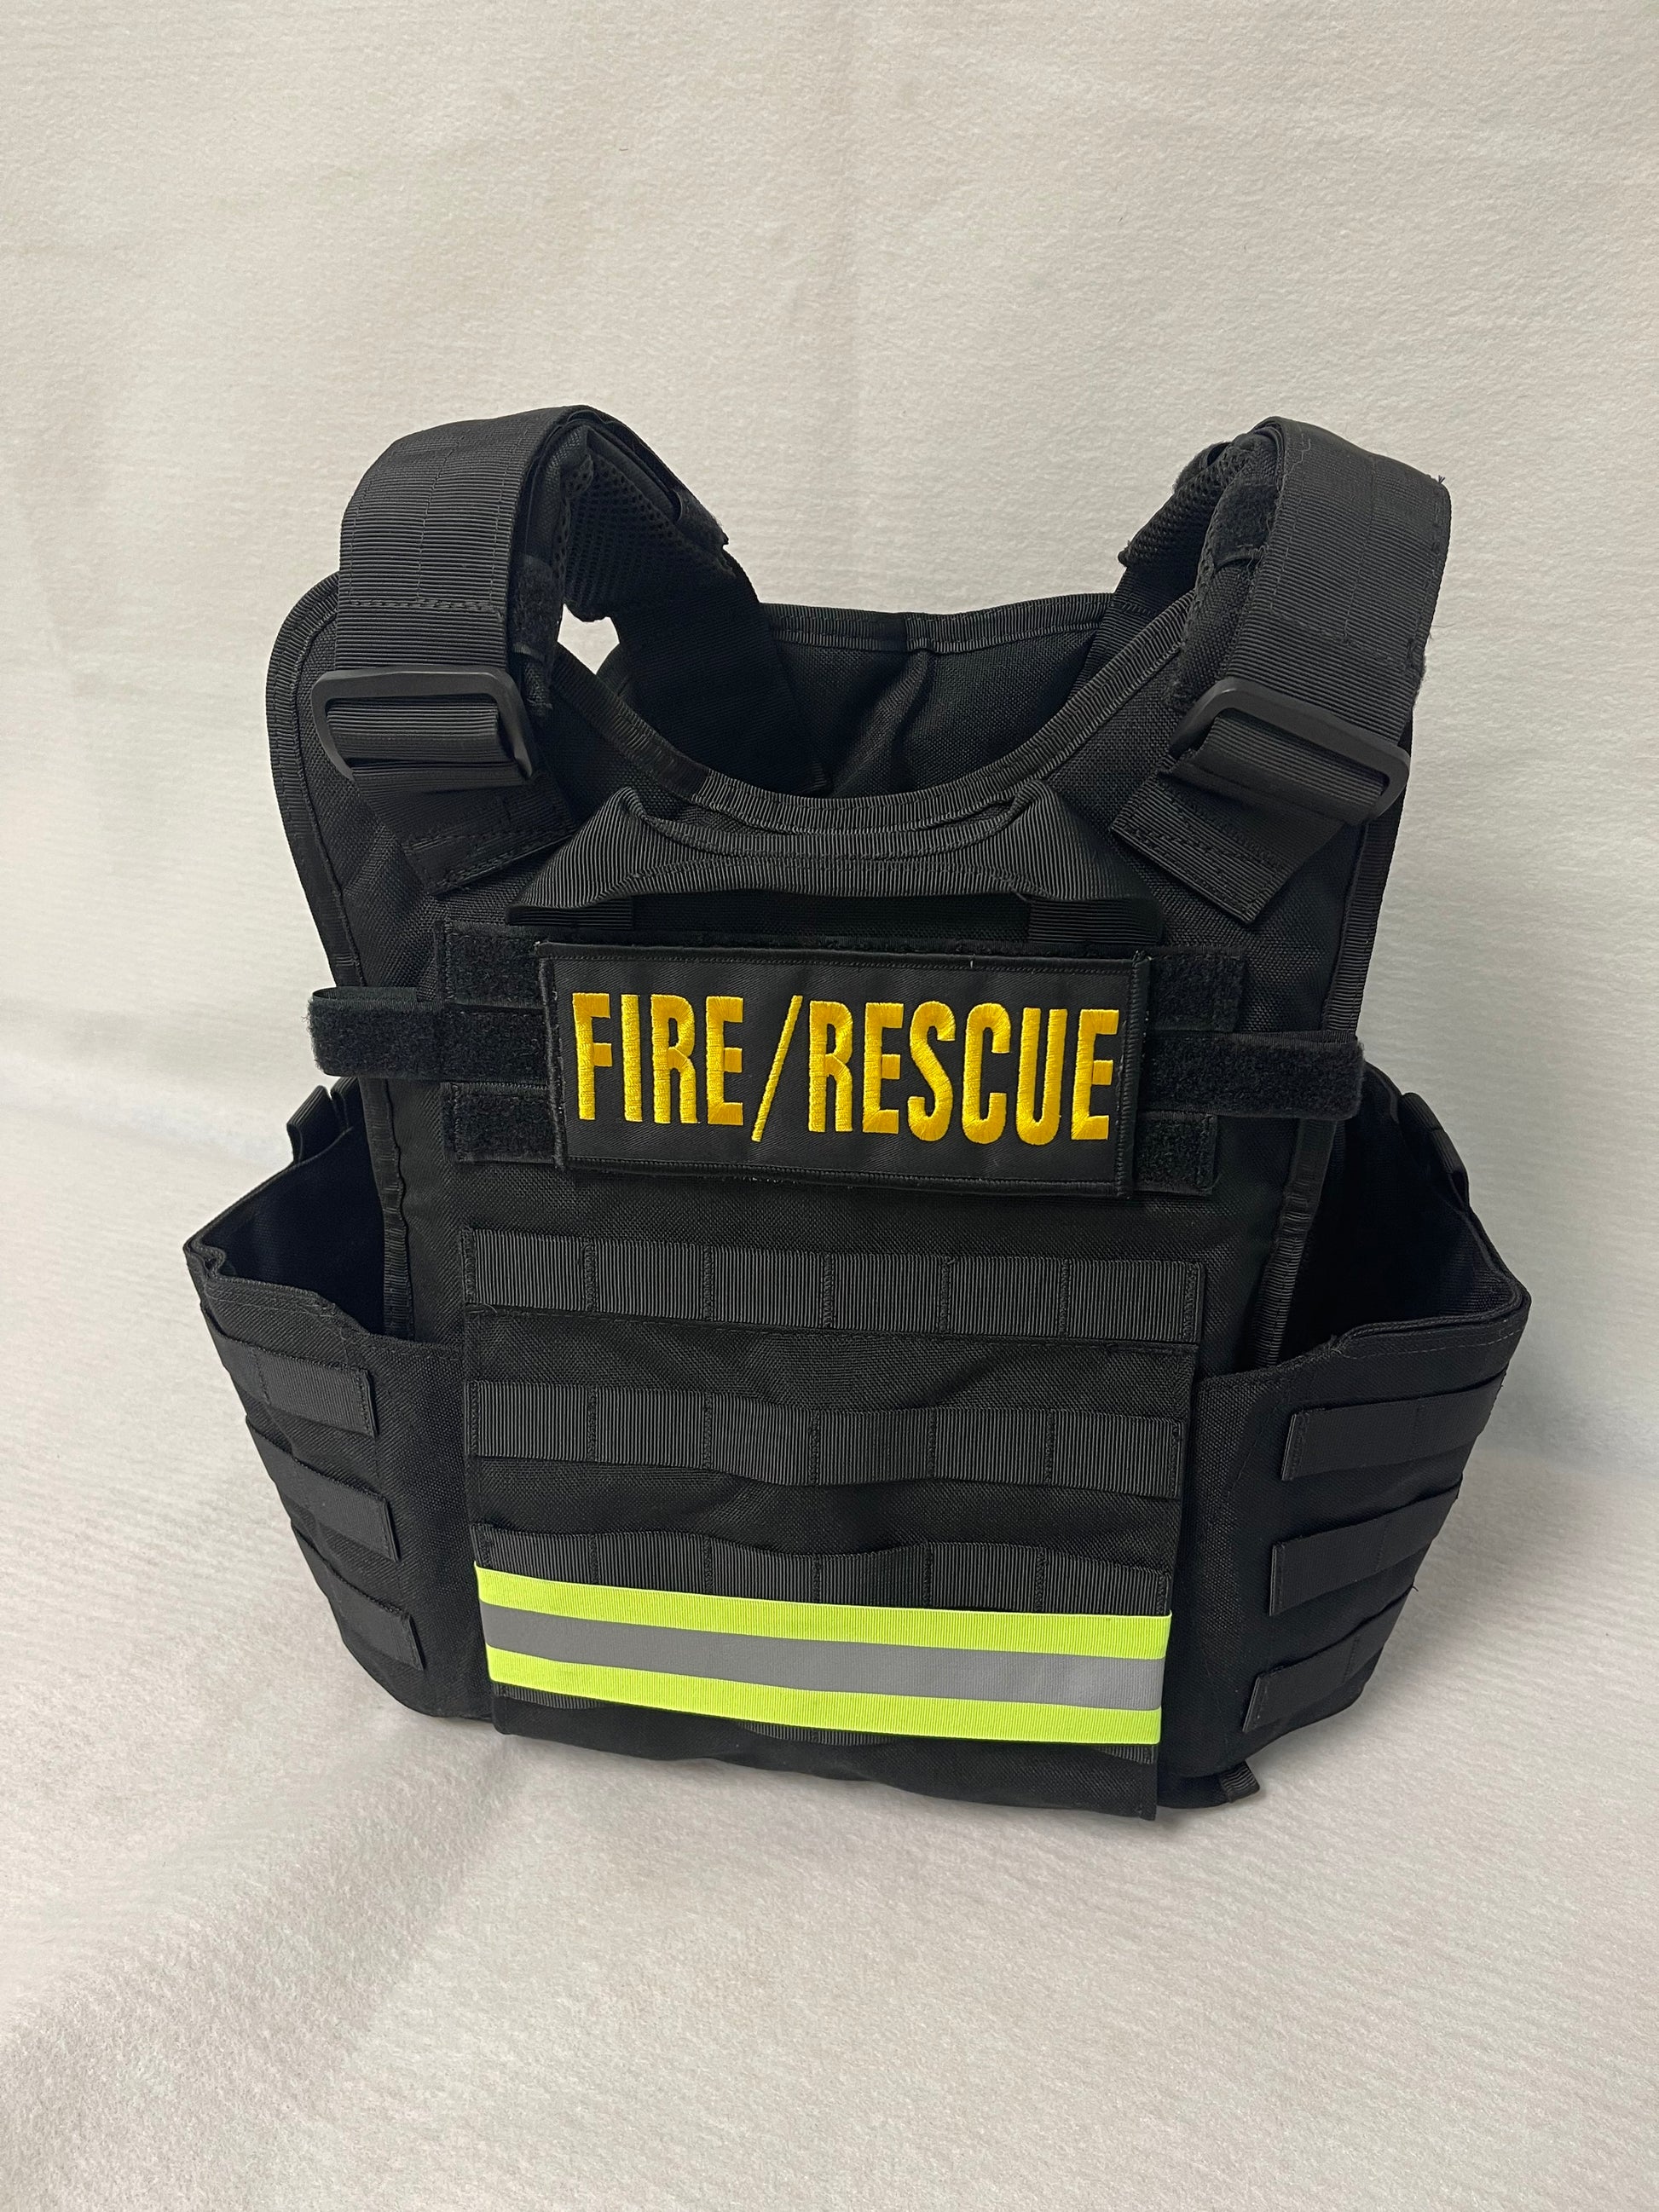 body armor vest